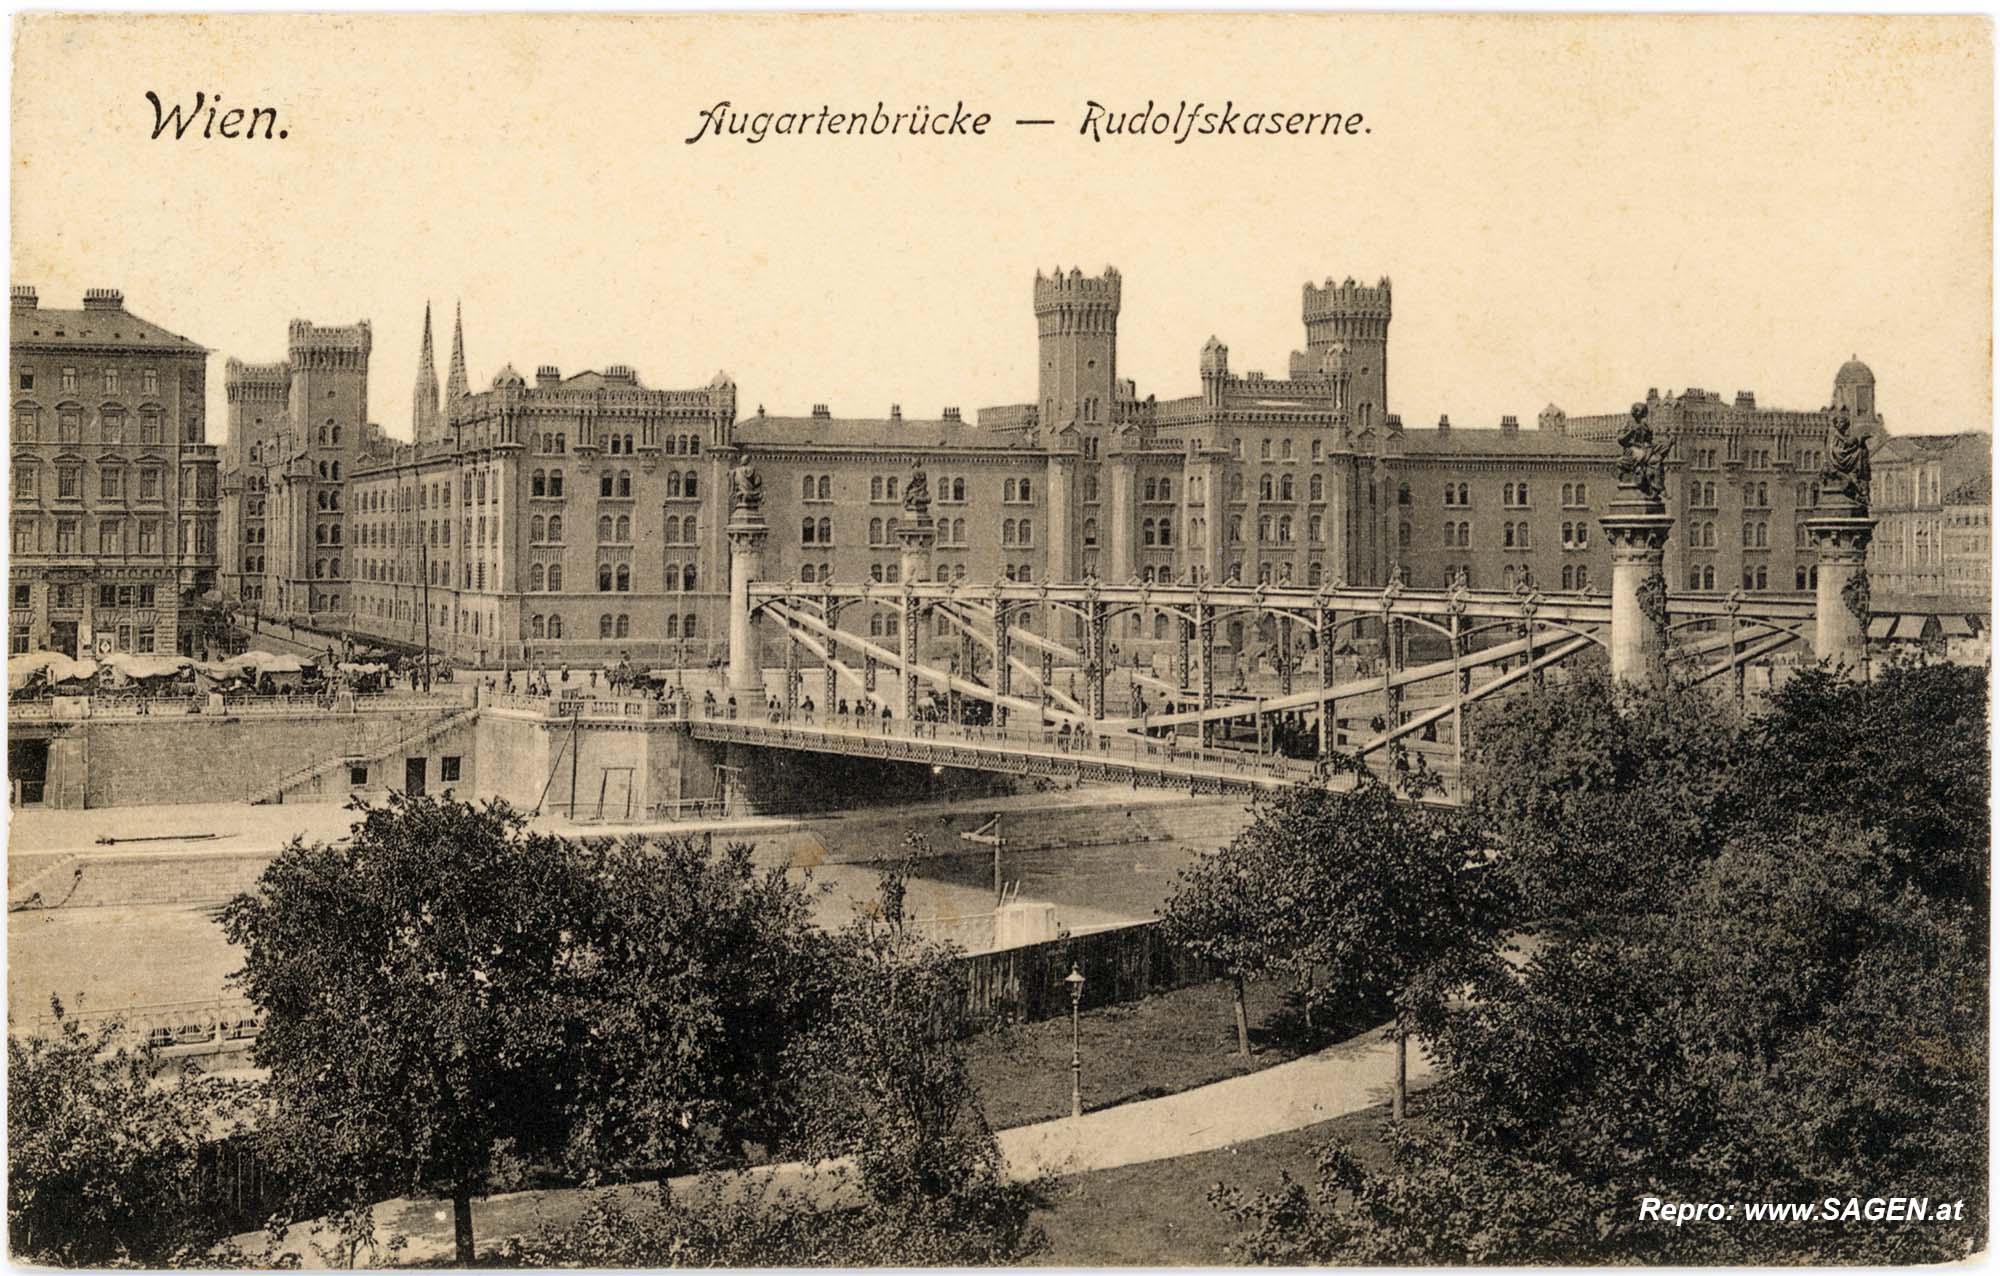 Wien, Augartenbrücke - Rudolfskaserne